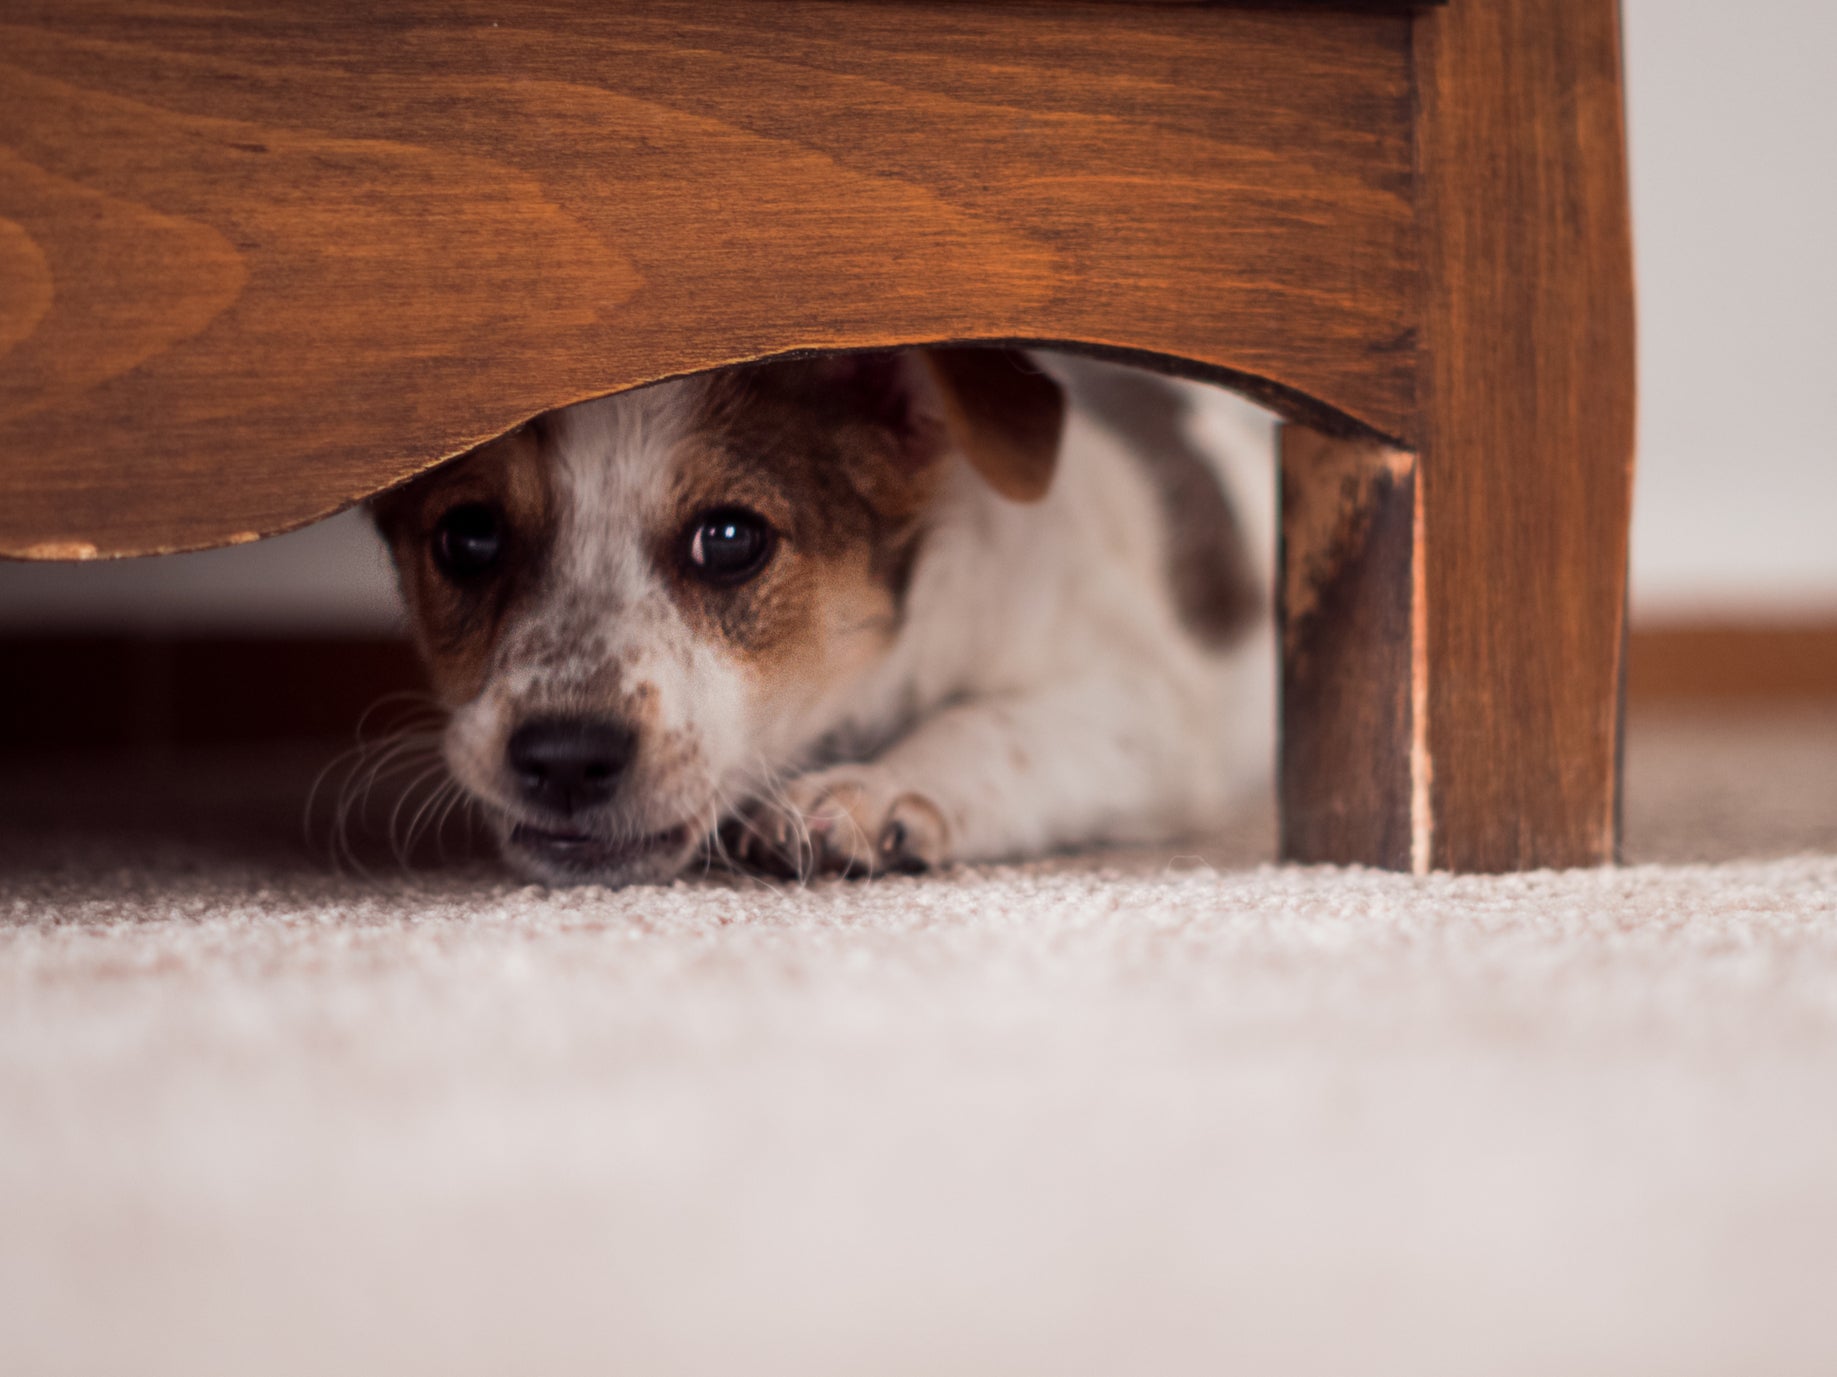 Little puppy hides under a cupboard